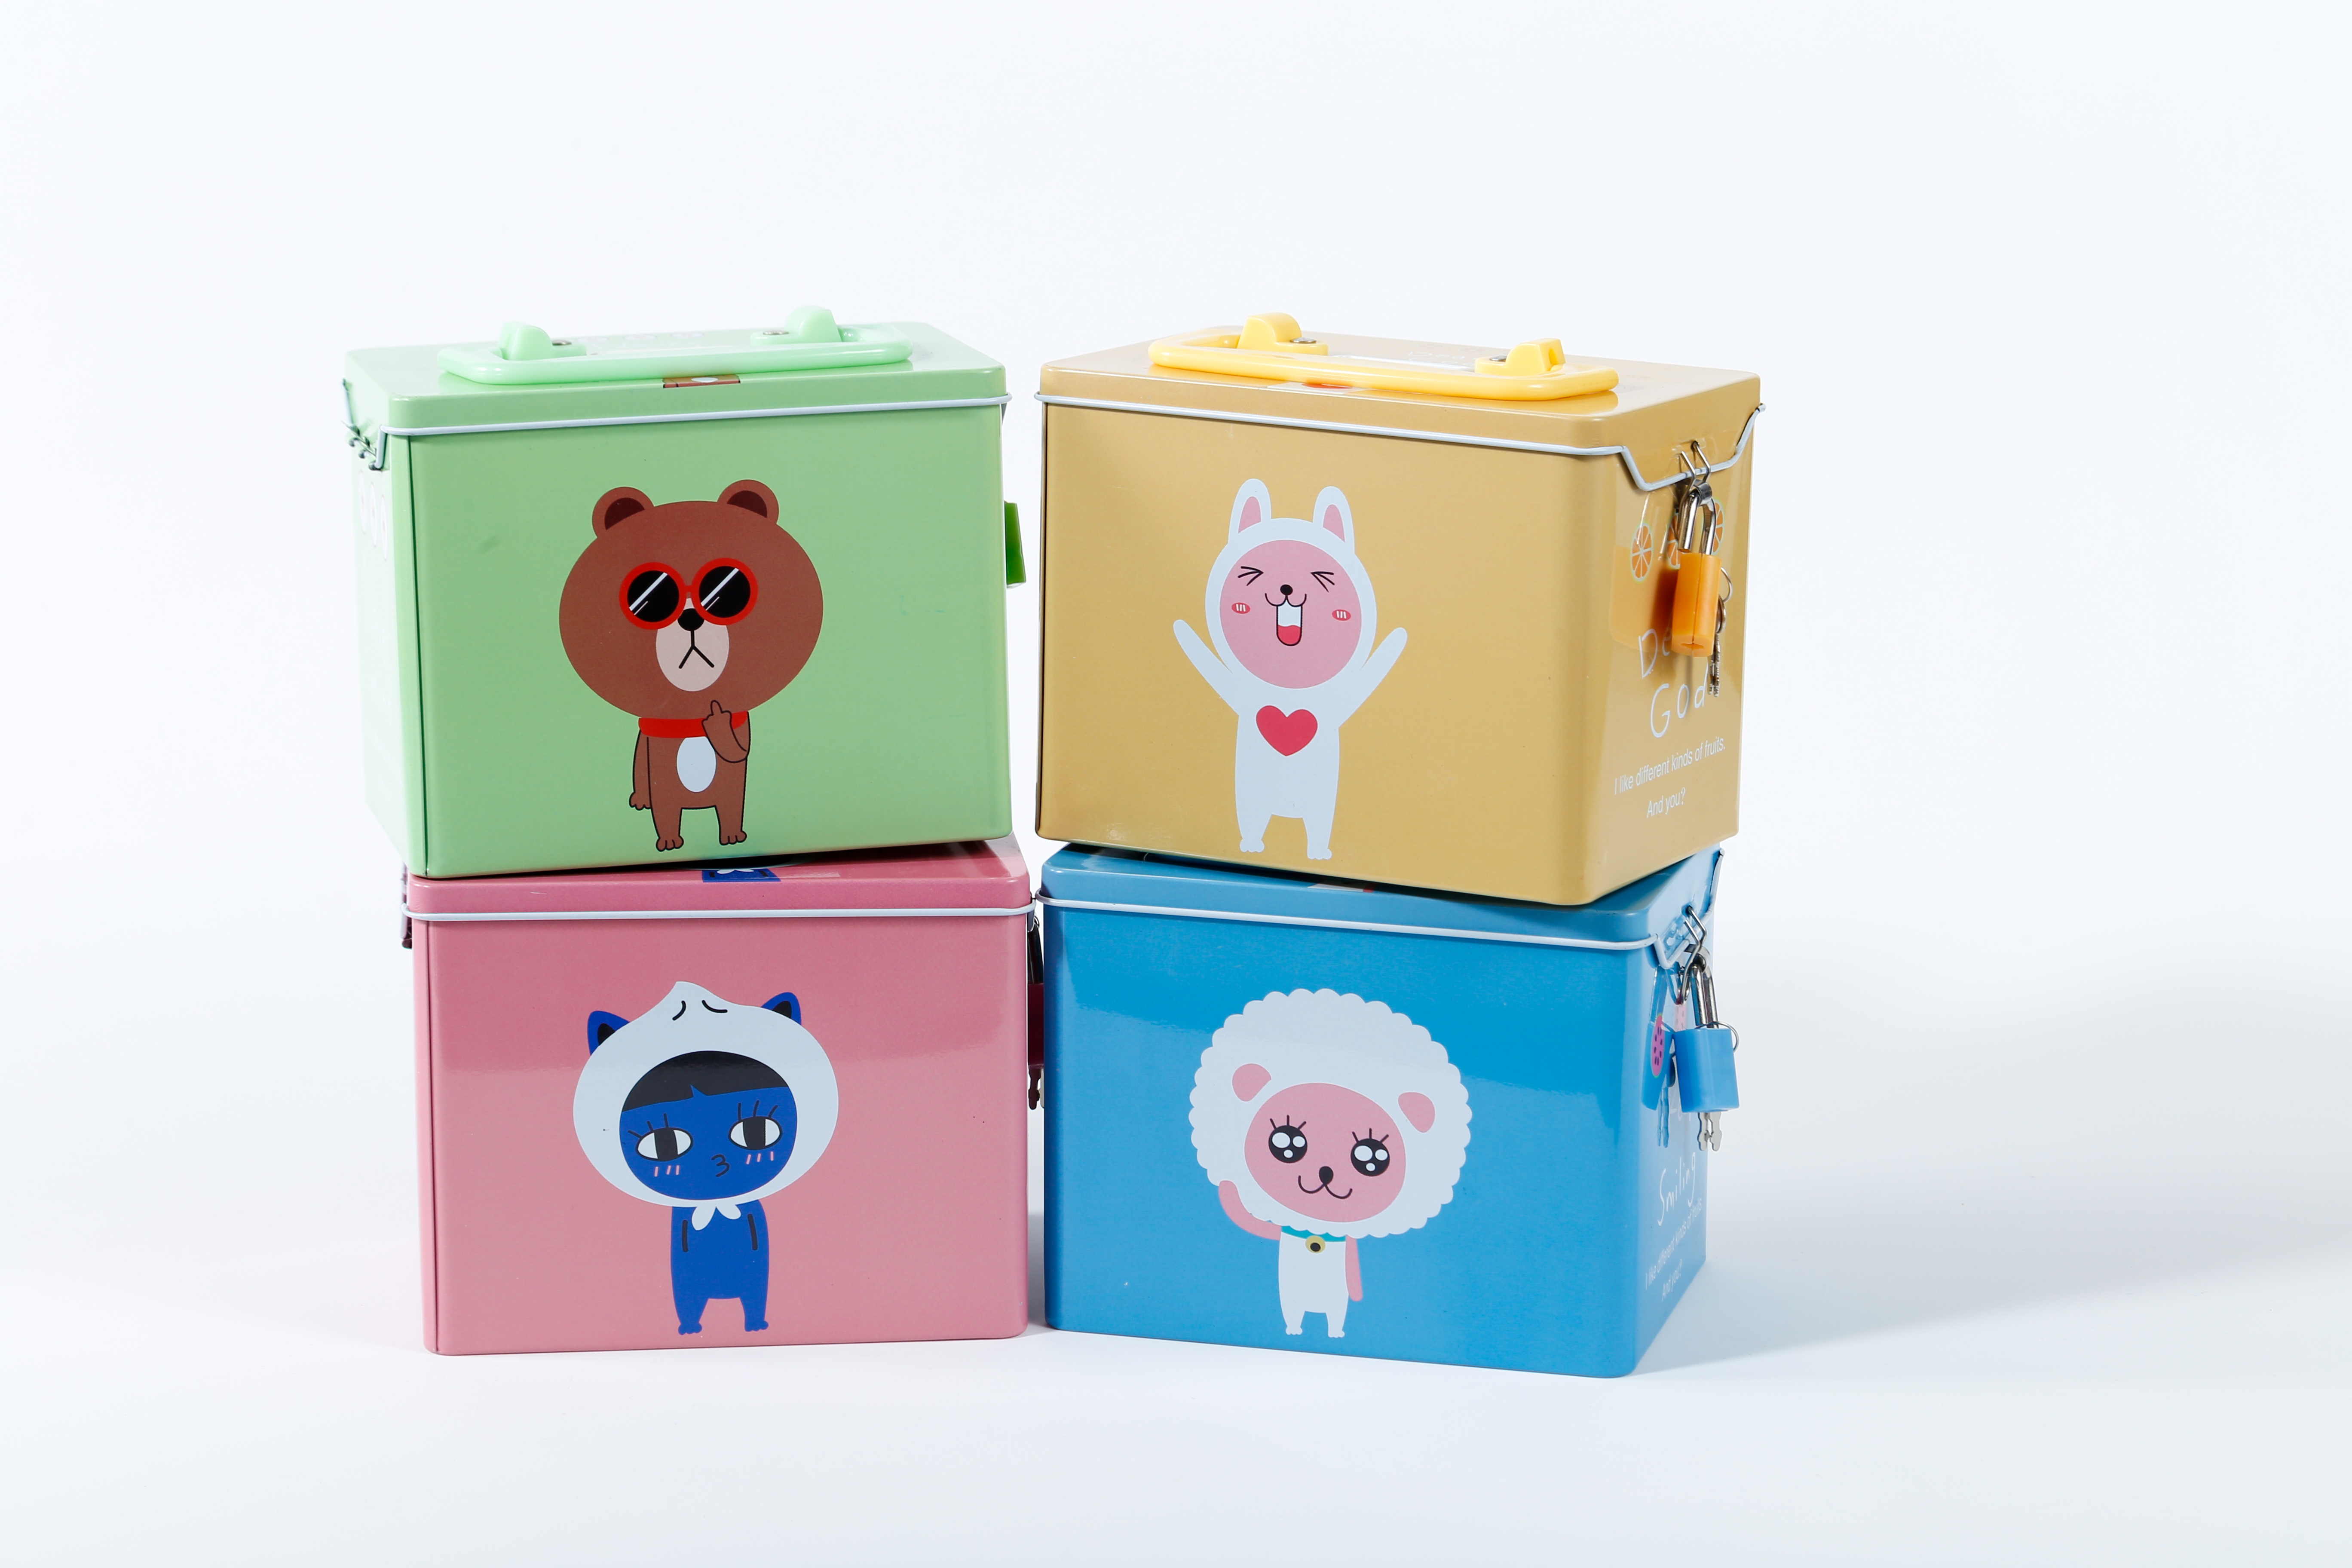  新品卡通玩具收纳盒儿童礼物马口铁罐创意礼品存钱储蓄罐